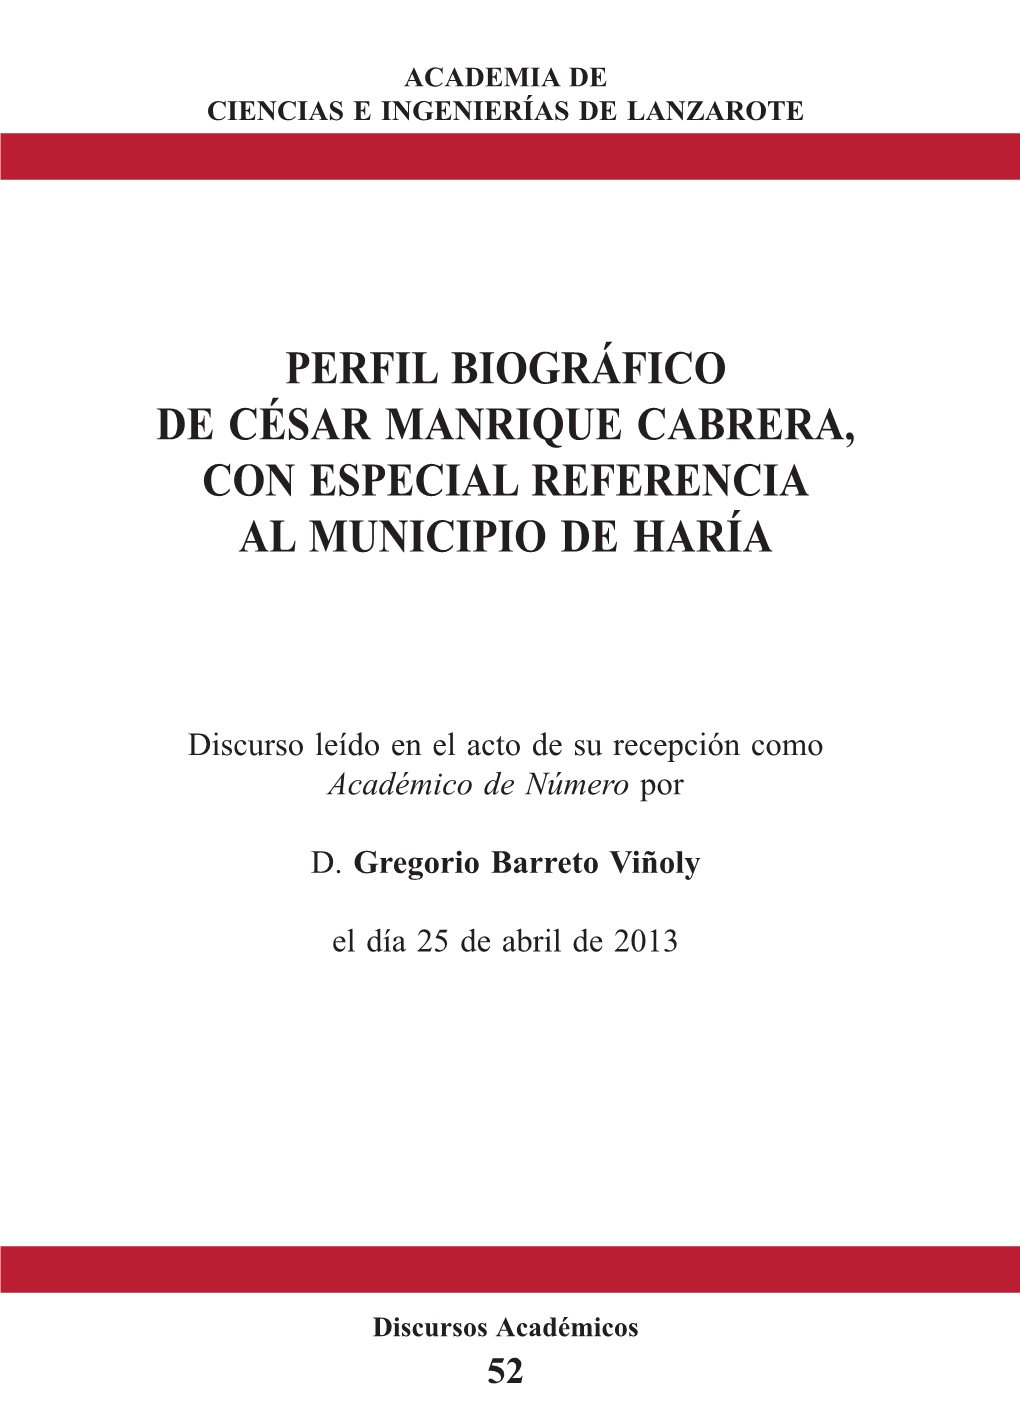 Perfil Biográfico De César Manrique Cabrera, Con Especial Referencia Al Municipio De Haría